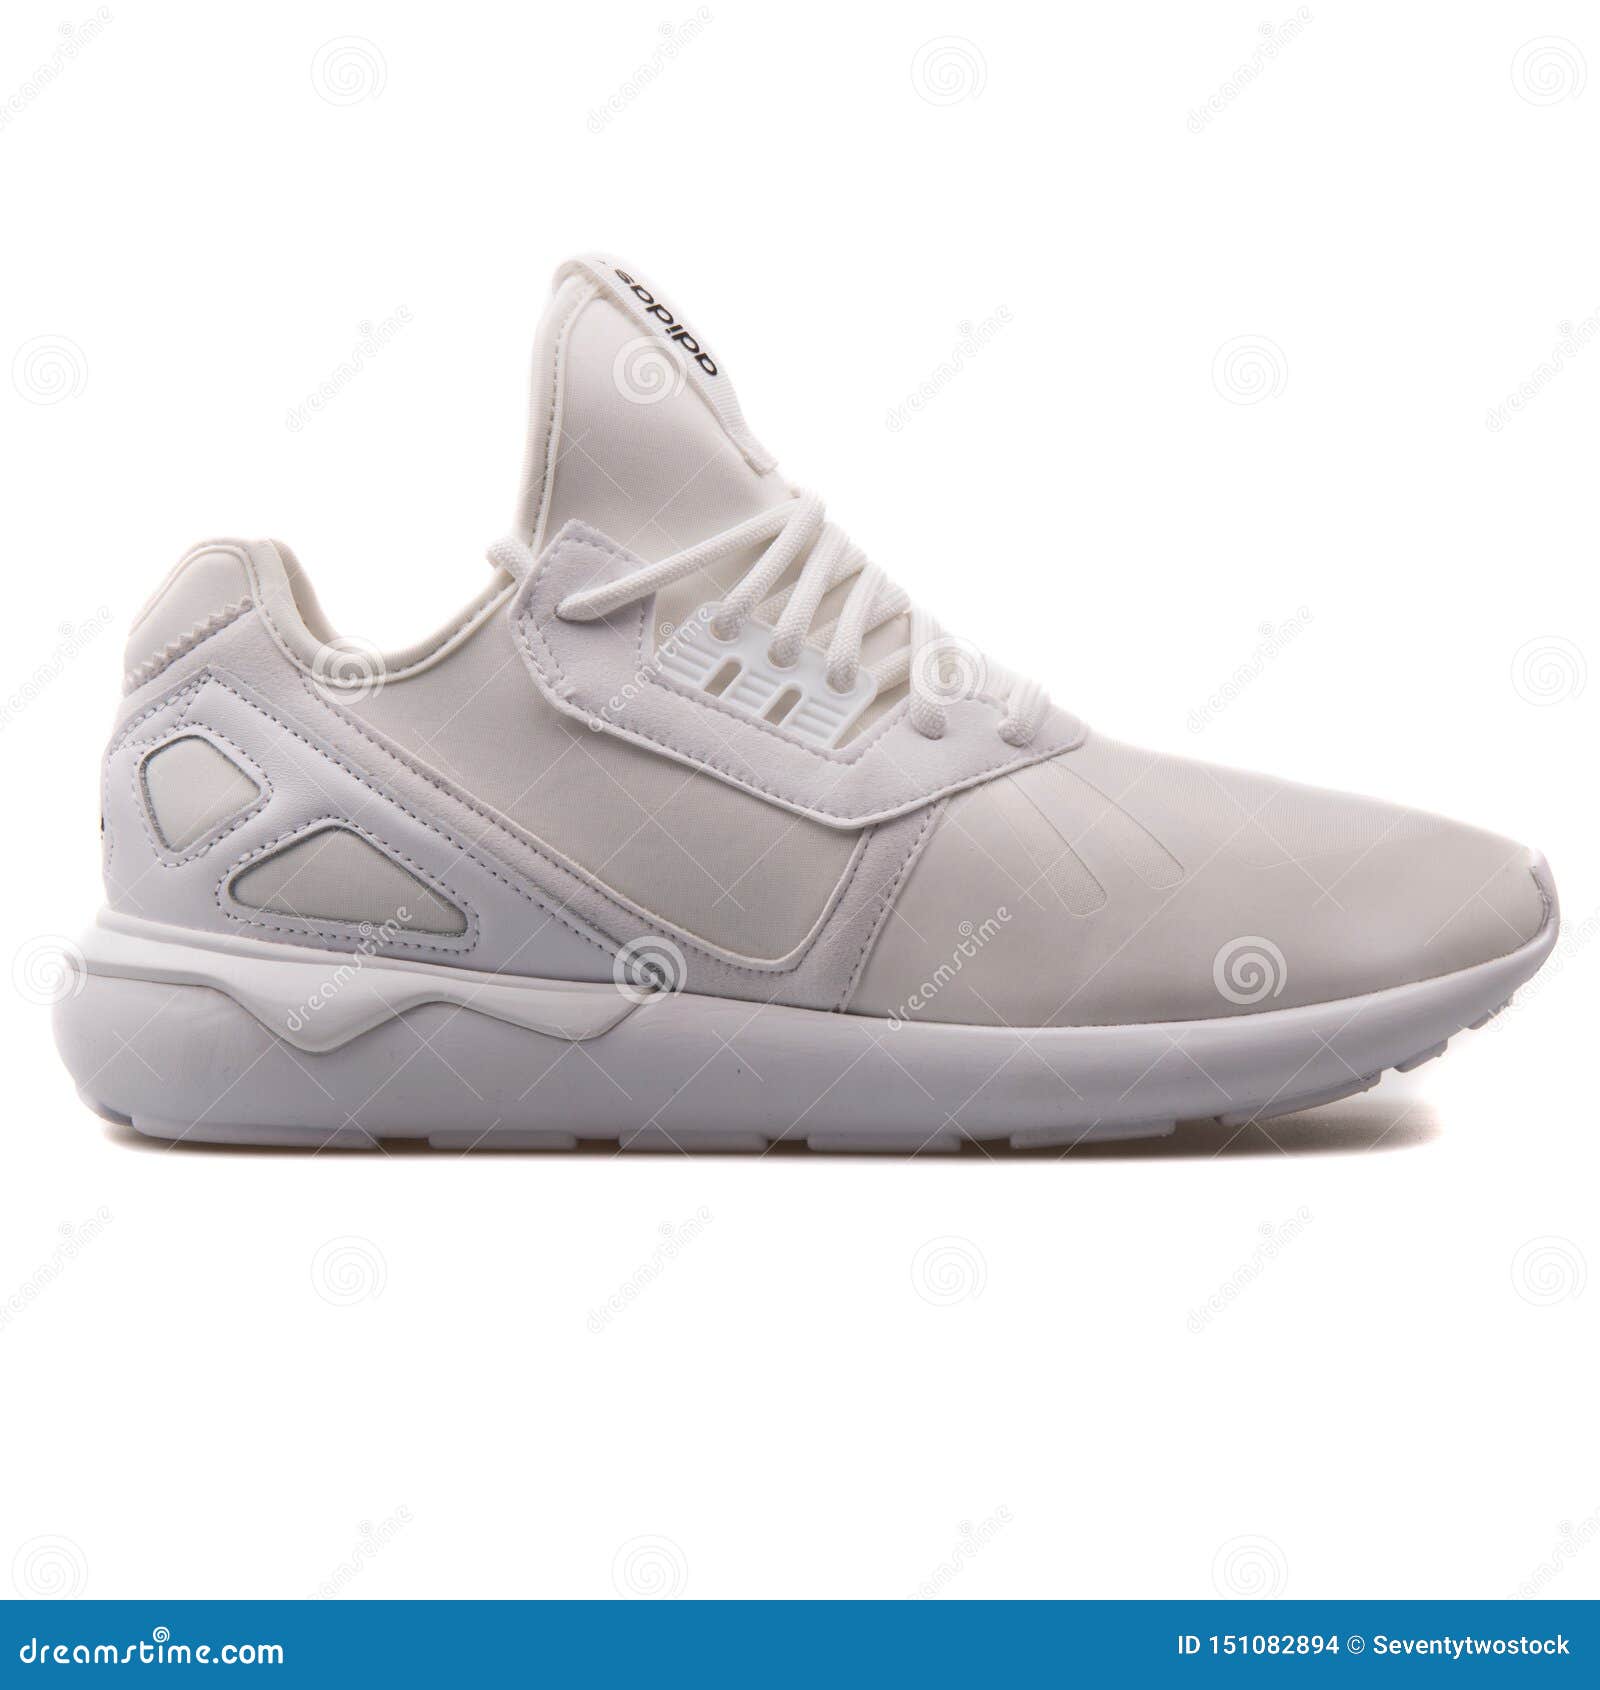 Adidas Tubular Runner White Sneaker 